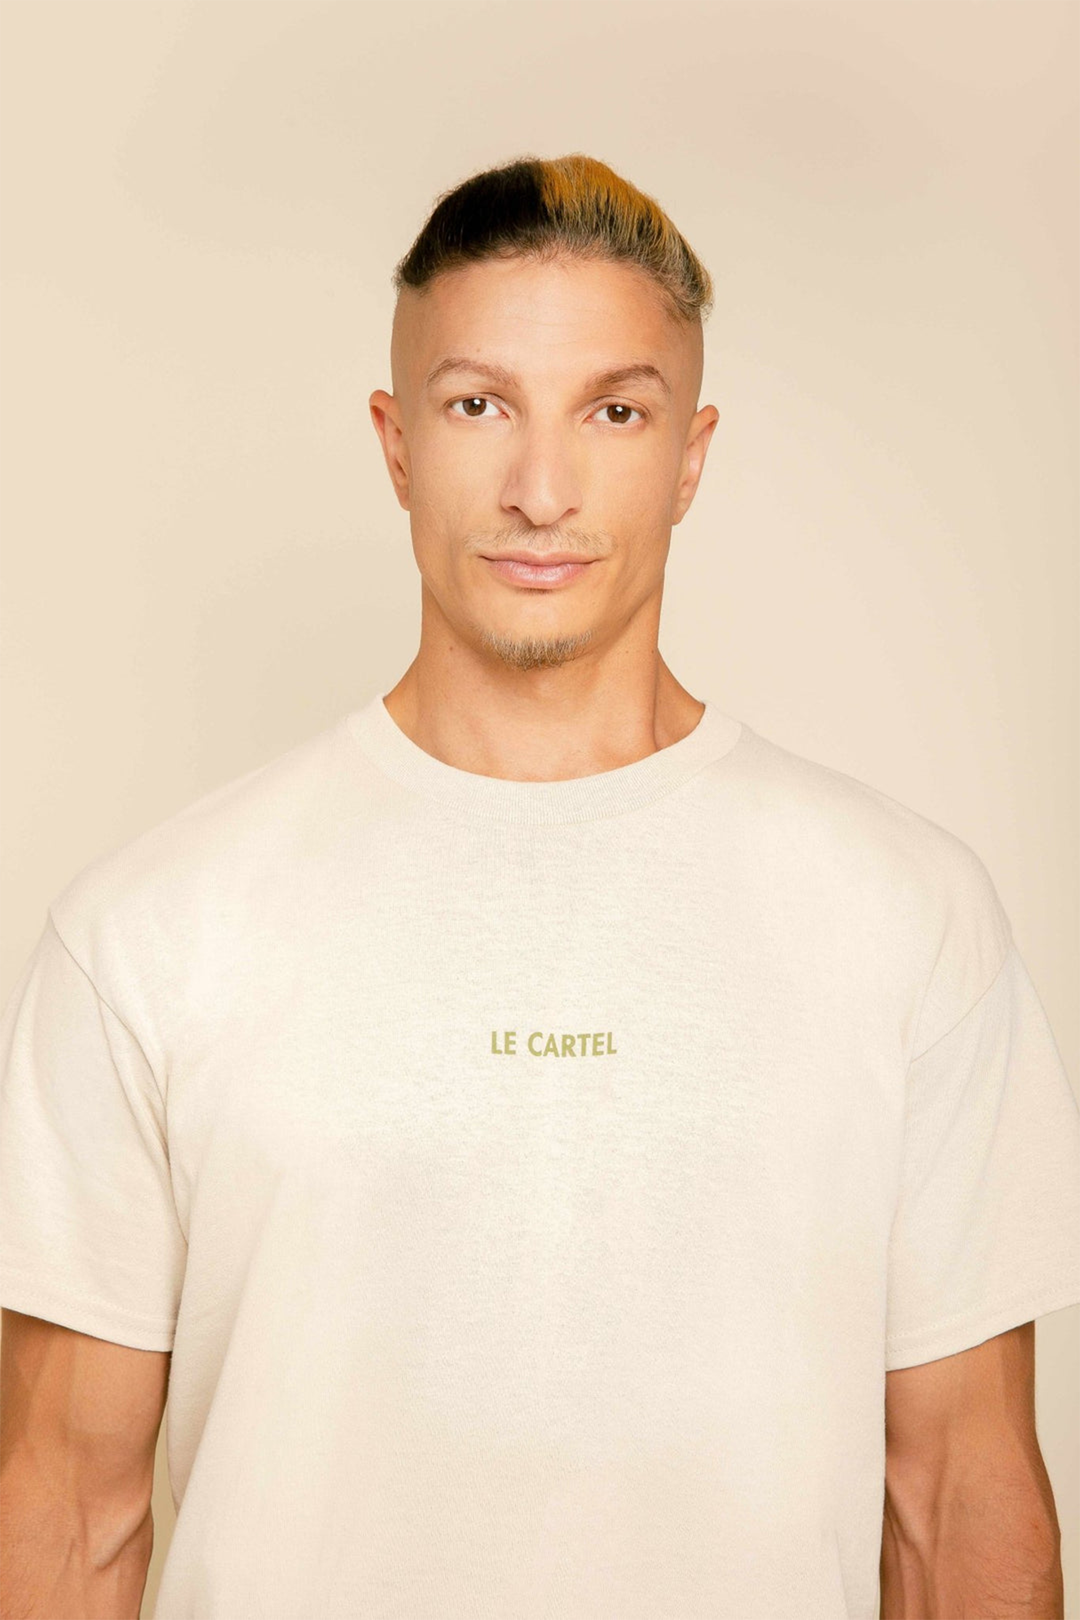 COLLÉ-SERRÉ・T-shirt unisexe・Sable